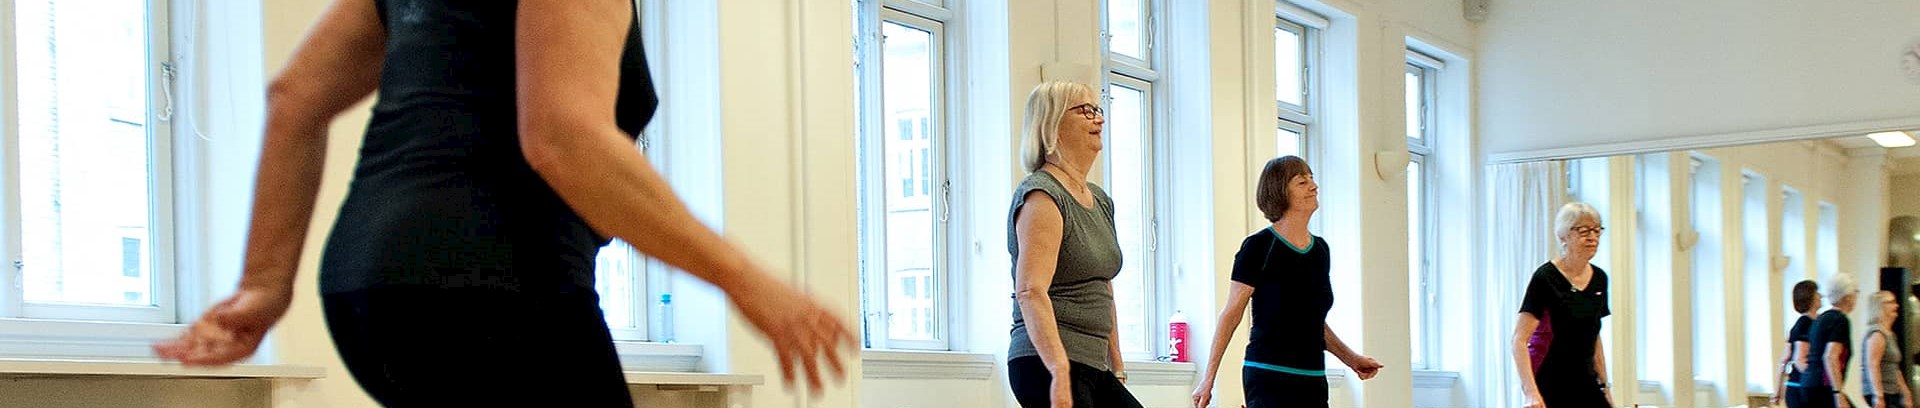 Kursus ved FOF Aarhus ' Sundhedstræning 60+' ved underviser Agnete Salomonsen